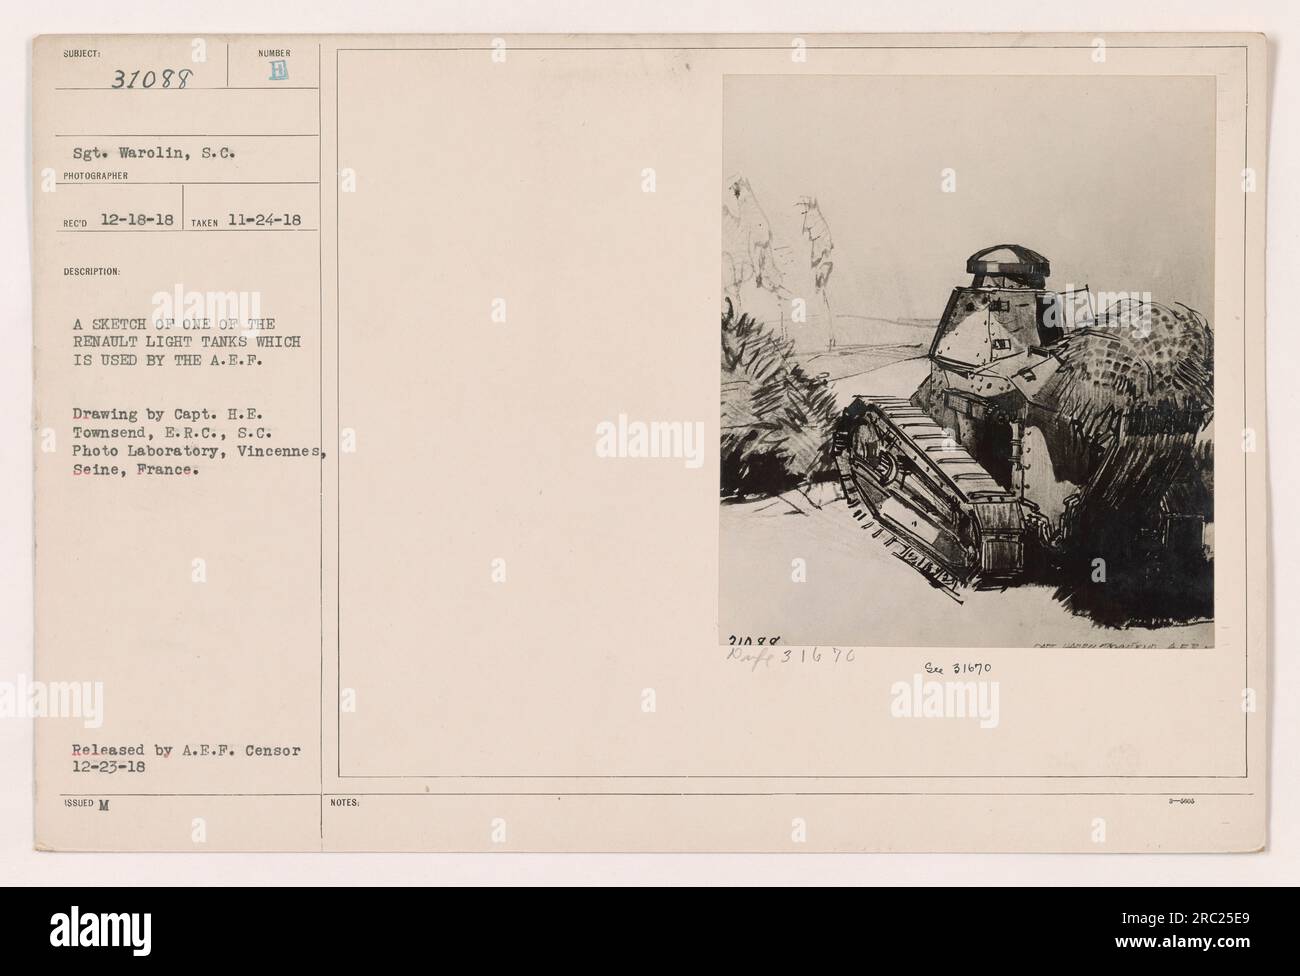 Croquis d'un char léger Renault utilisé par l'American Expeditionary Force (A.E.F) pendant la première Guerre mondiale. Le croquis a été fait par le capitaine H.E. Townsend, E. R.C., S.C., au Laboratoire photo de Vincennes, Seine, France. Cette image a été publiée par le censeur de l'A.E.F. le 12-23-18. Banque D'Images